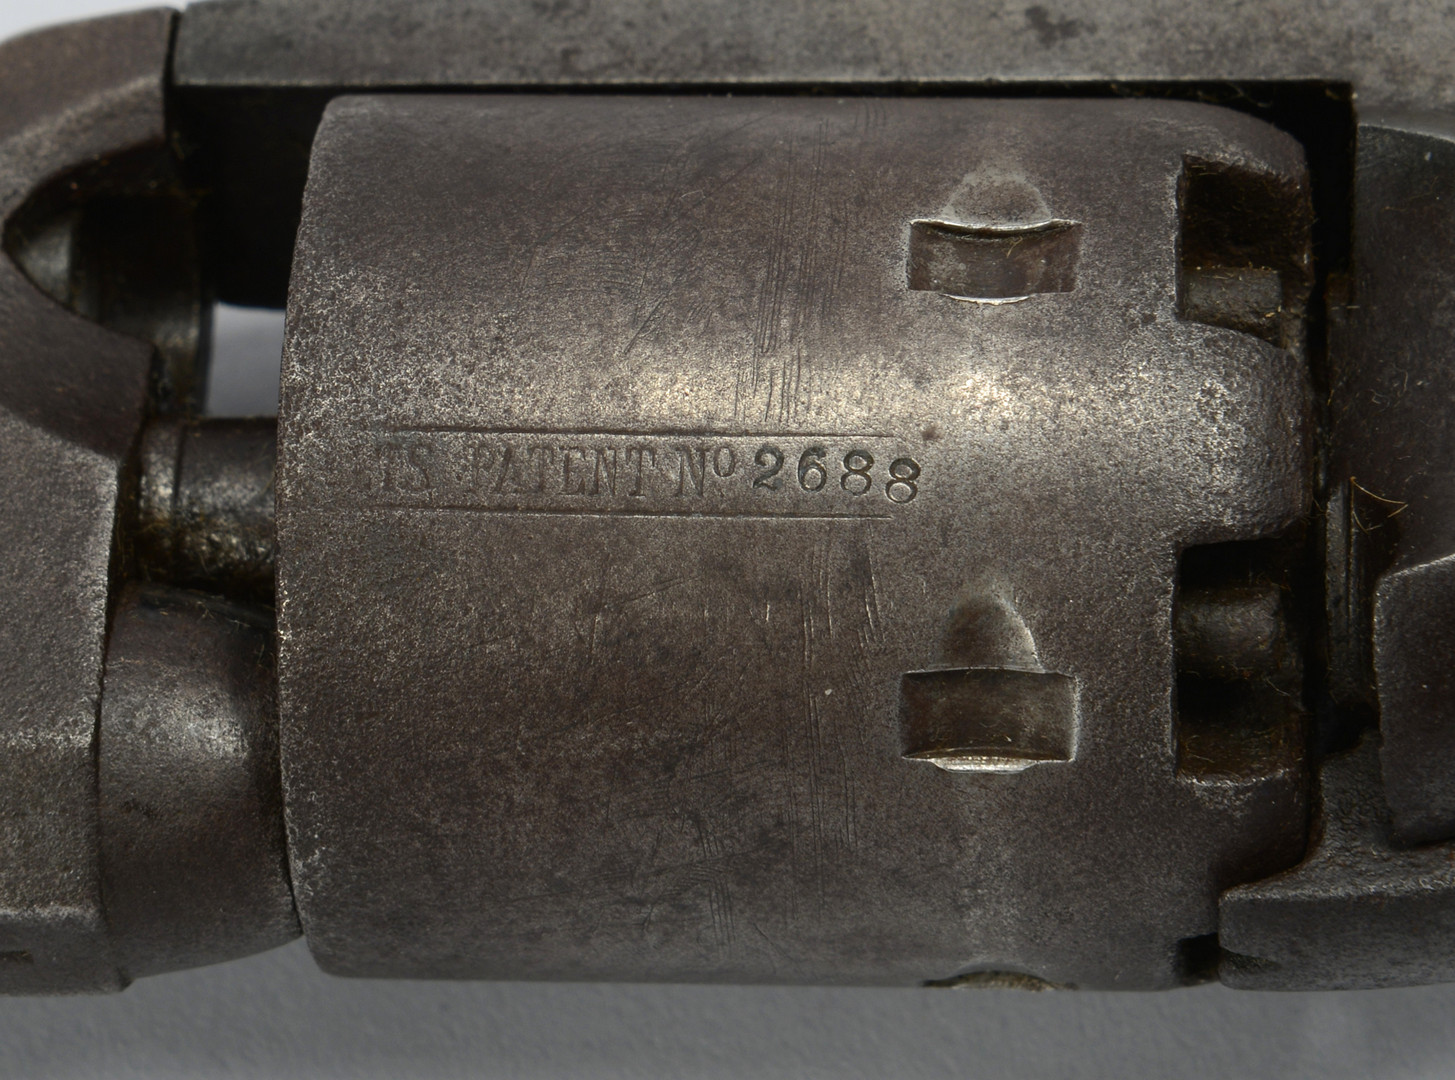 Lot 112: Colt Model 1851 Navy Revolver